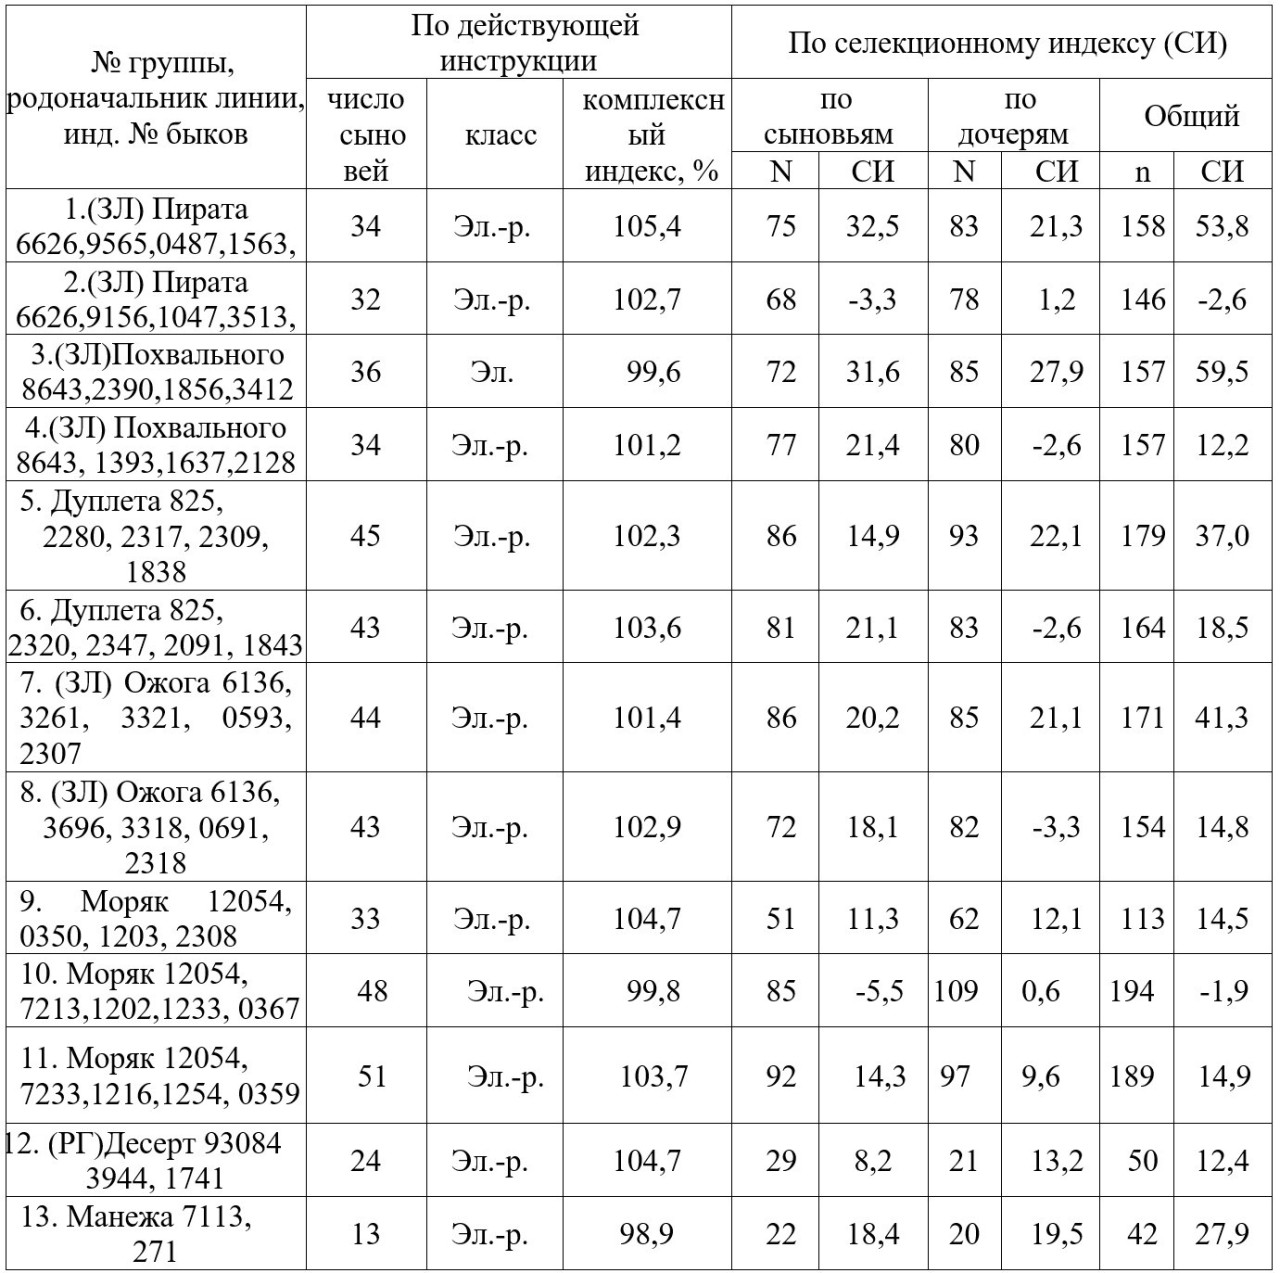 Таблица 8
- Сравнительная оценка быков-производителей по качеству потомства